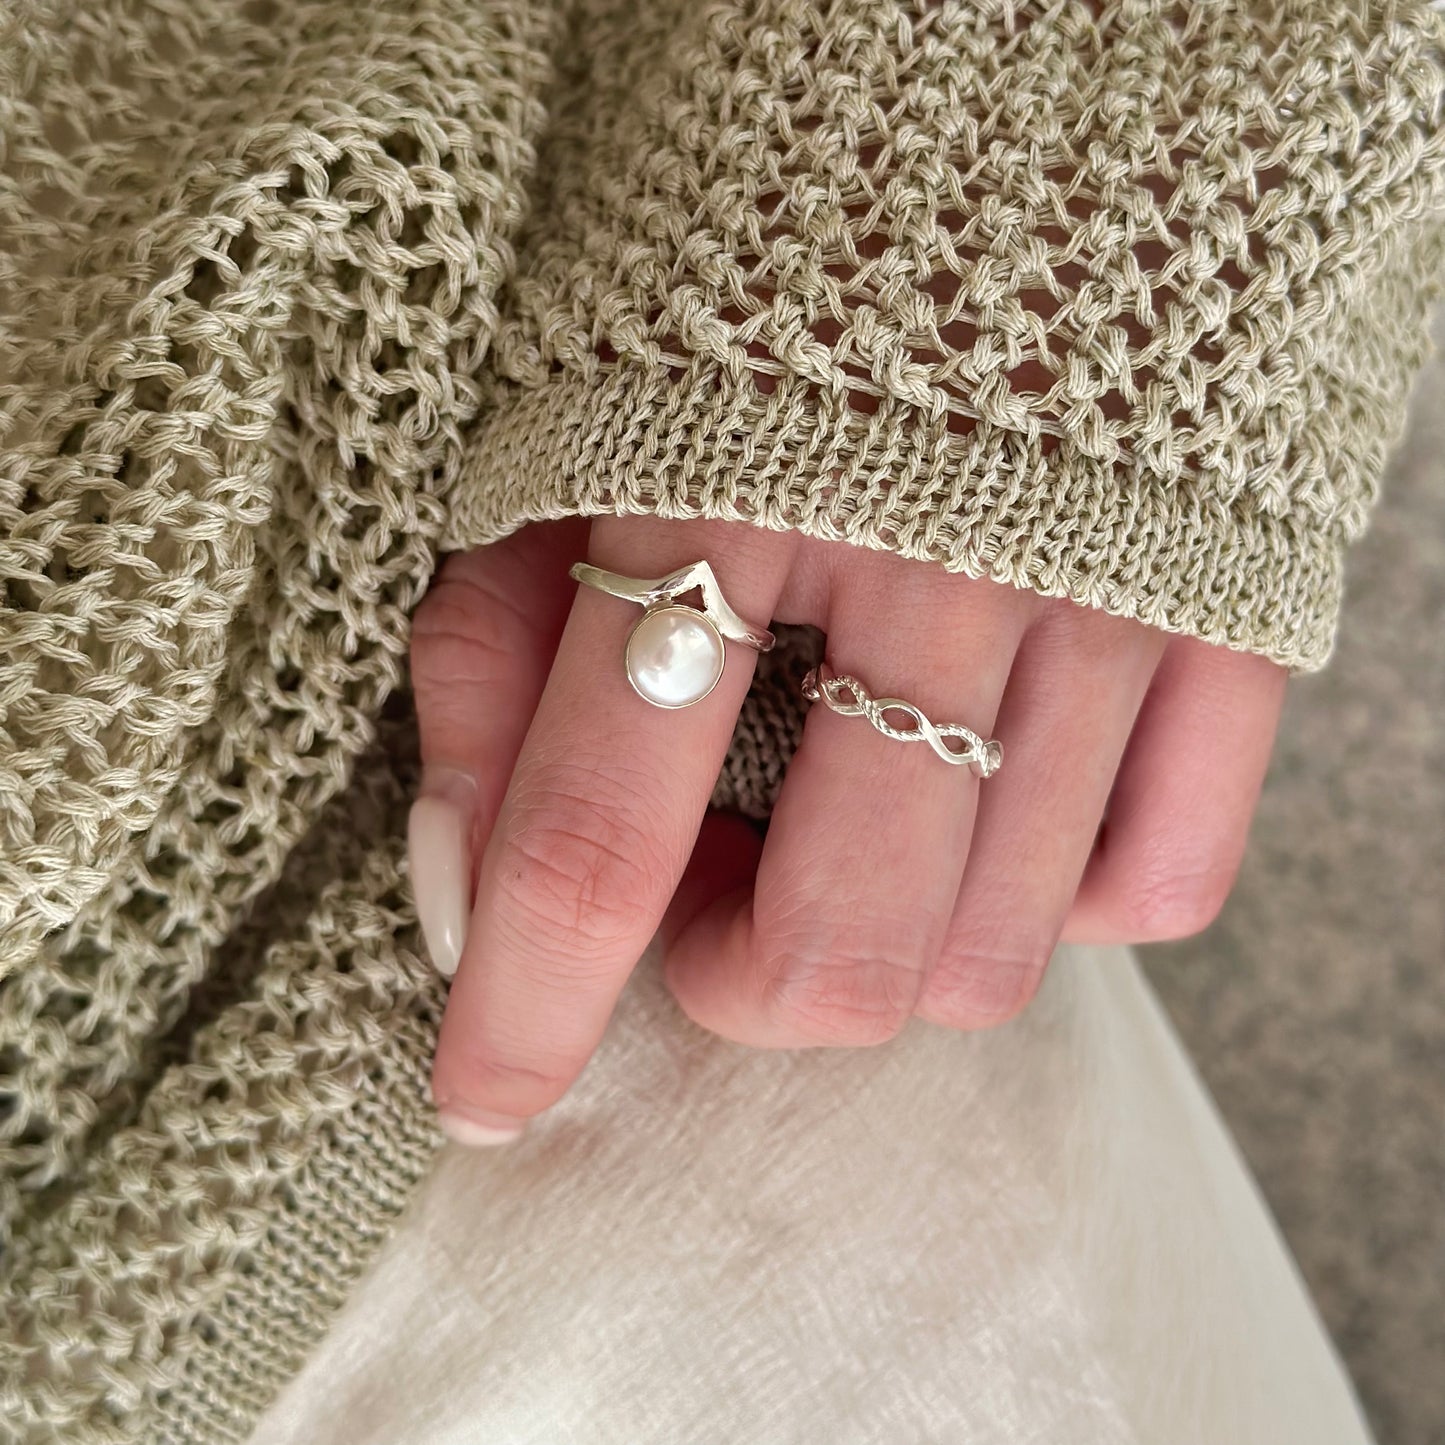 Pearl design ring 2